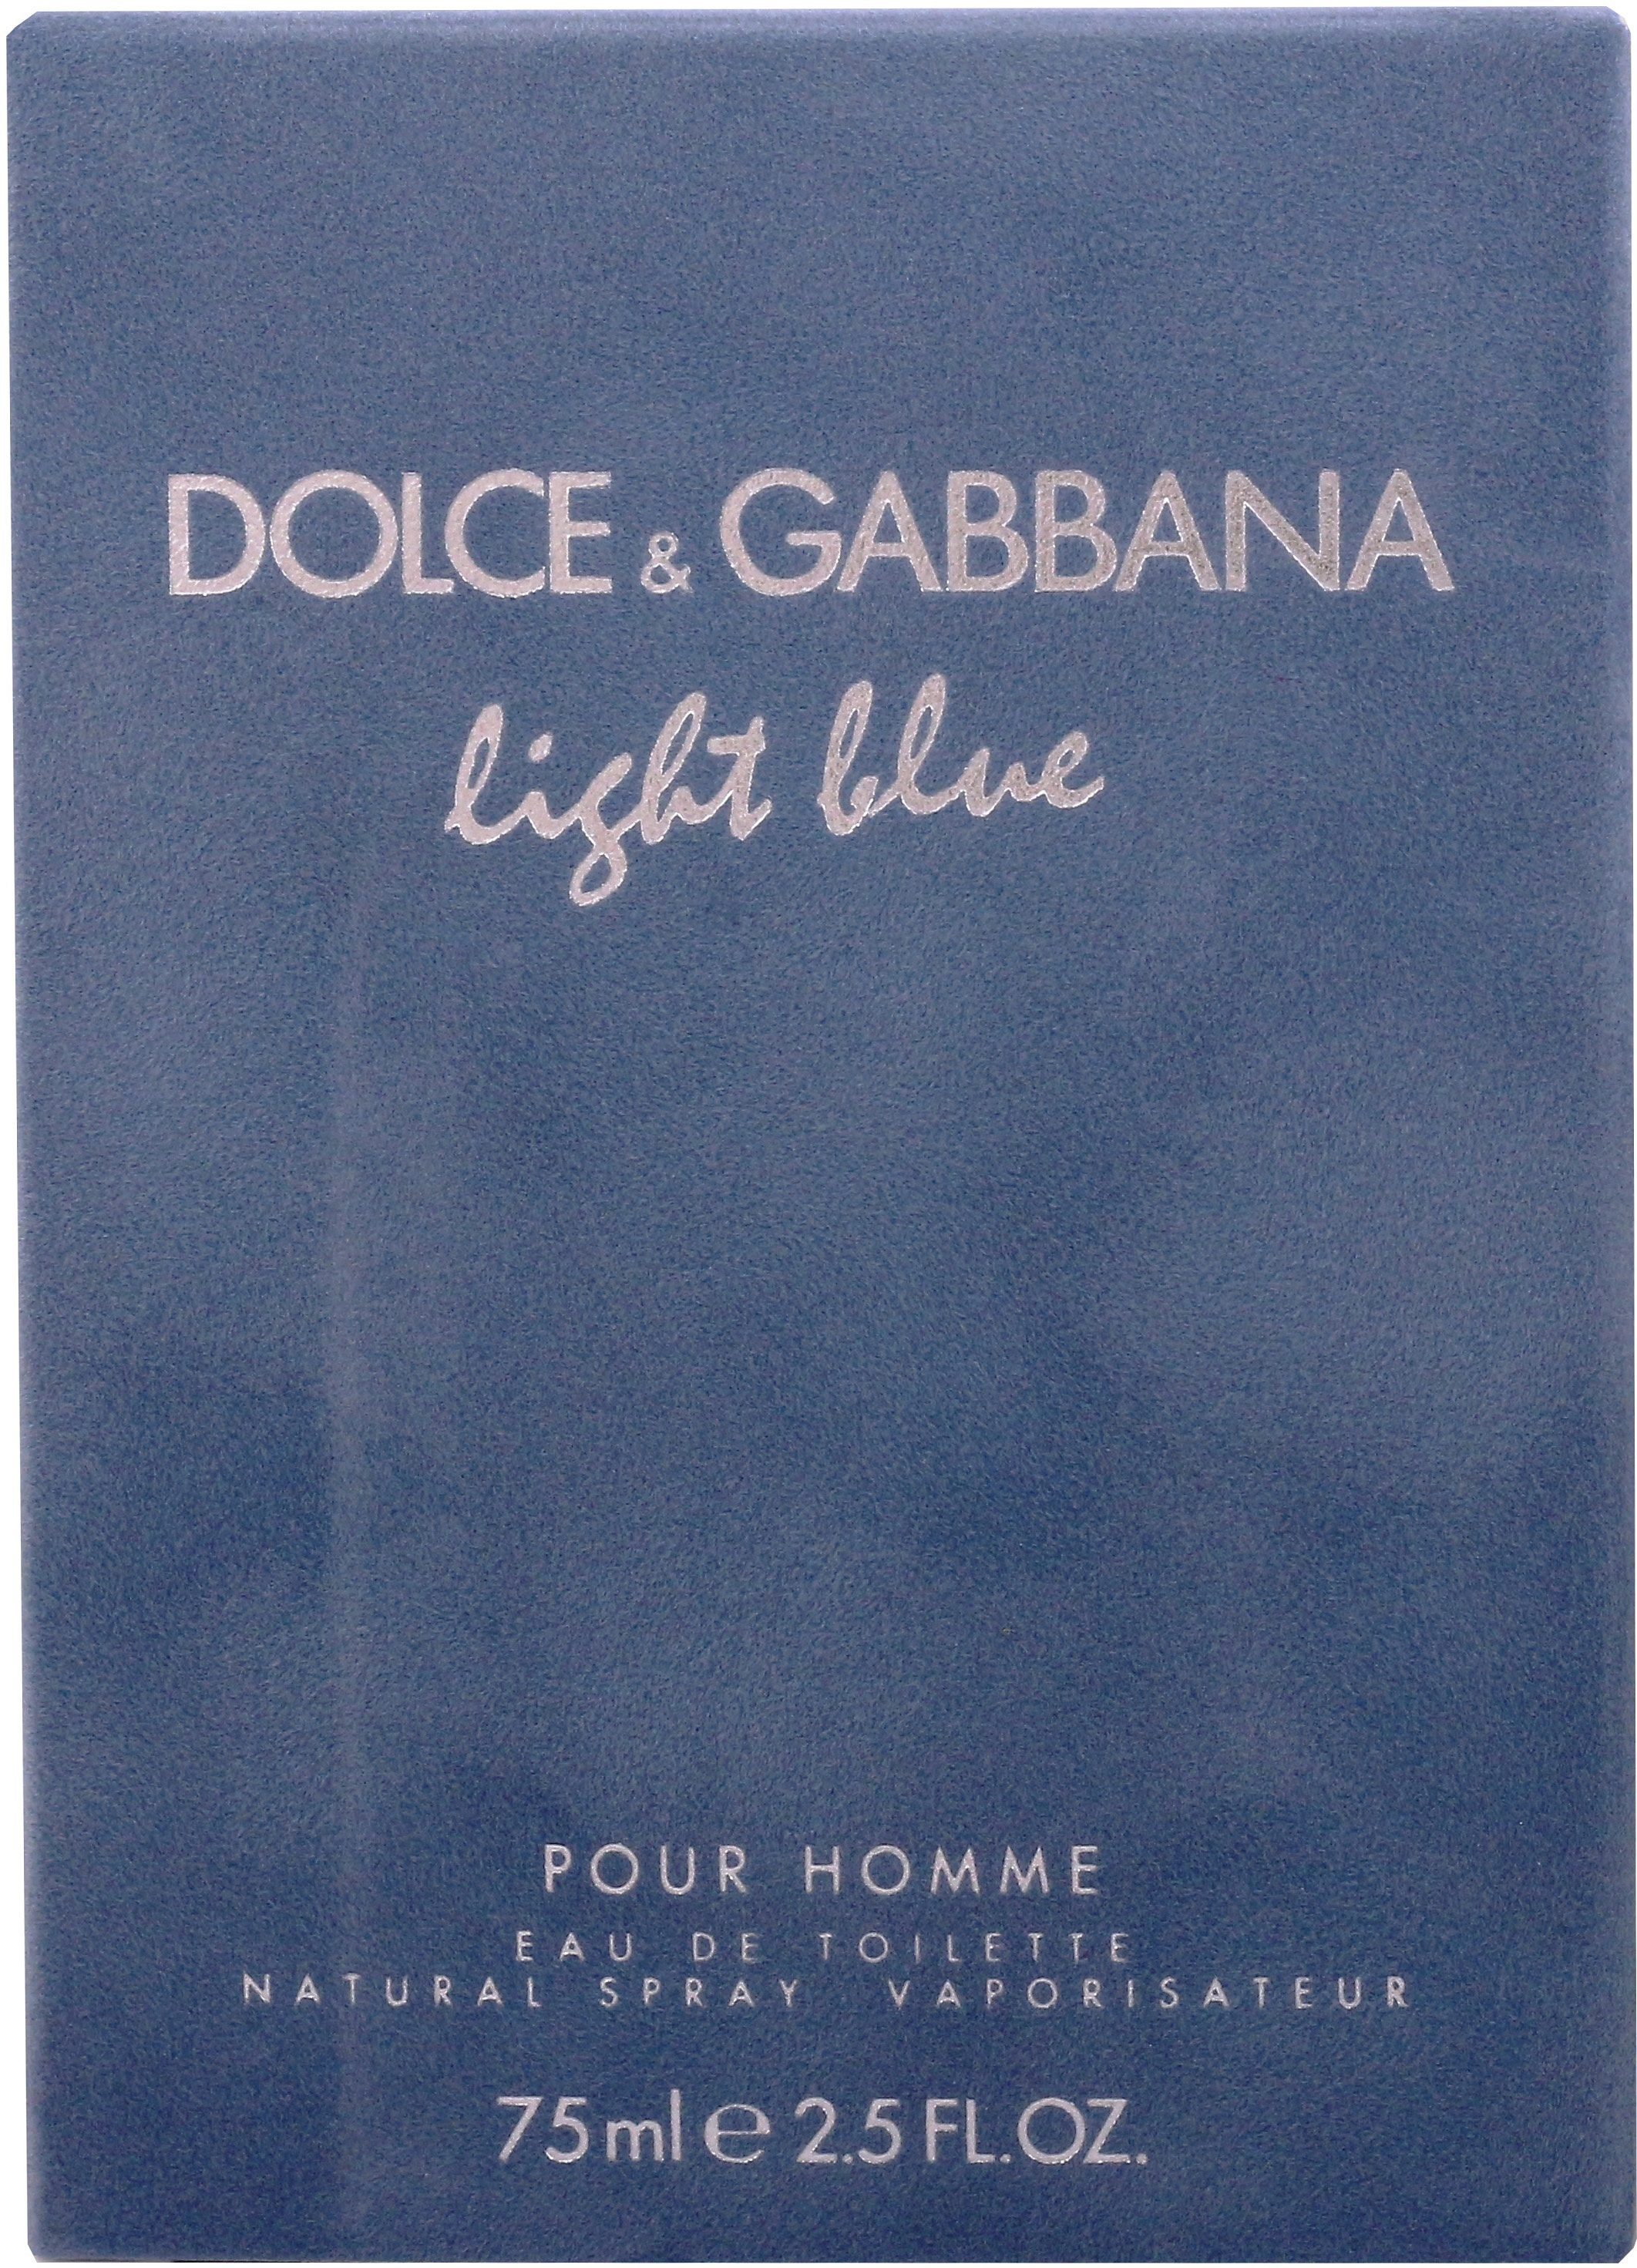 Pour Parfum, de for Männer, Blue DOLCE & Light EdT Toilette Homme, GABBANA Eau für him